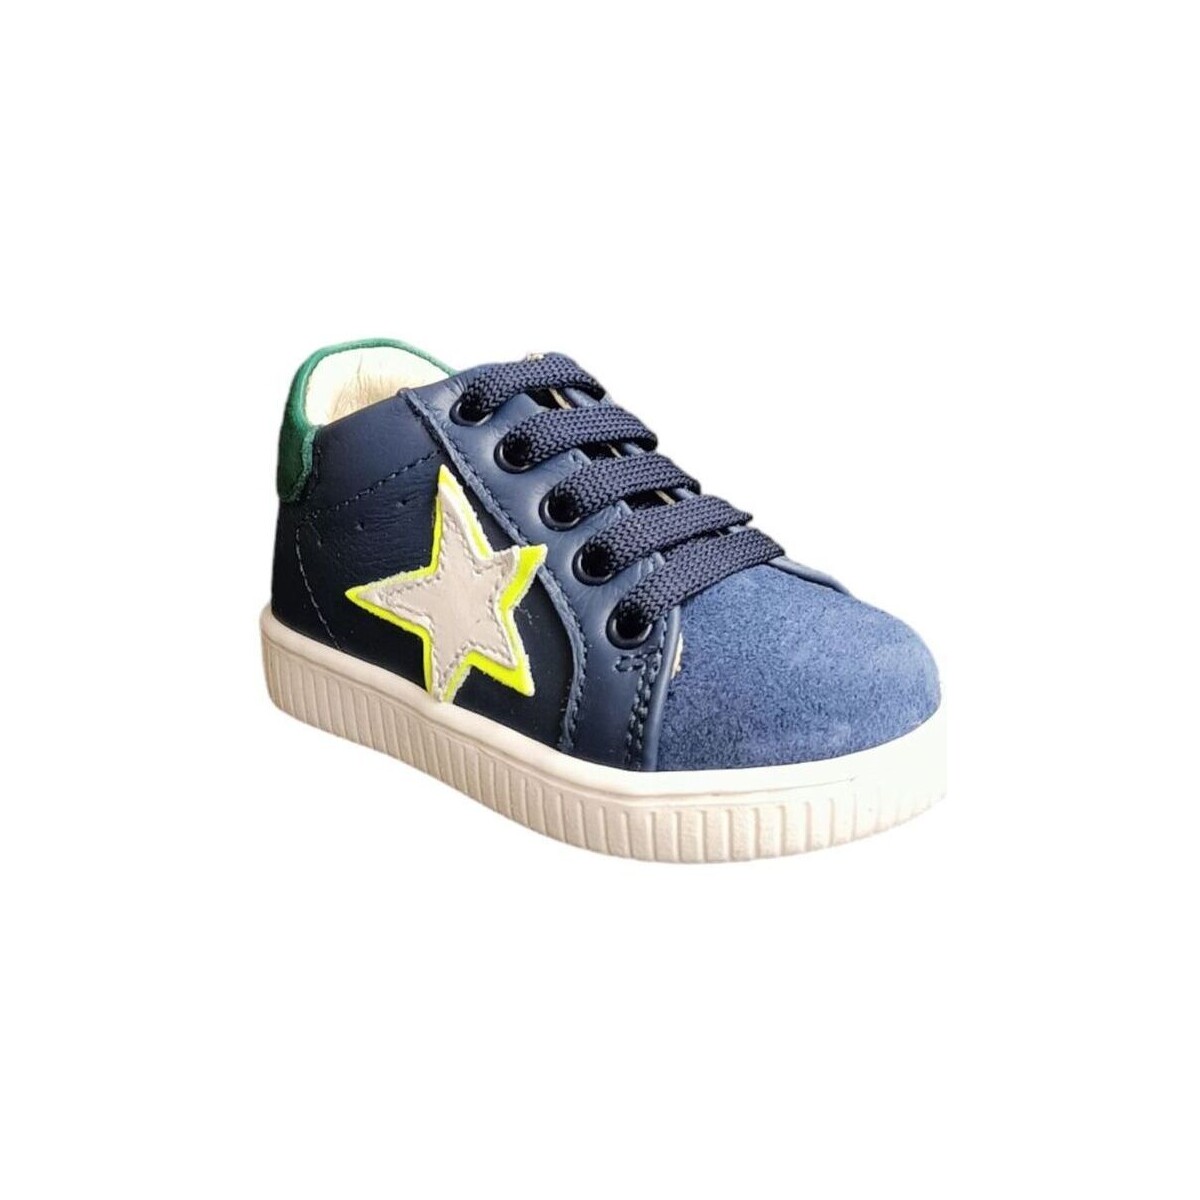 Schuhe Kinder Sneaker Balducci MSPO4473 Multicolor